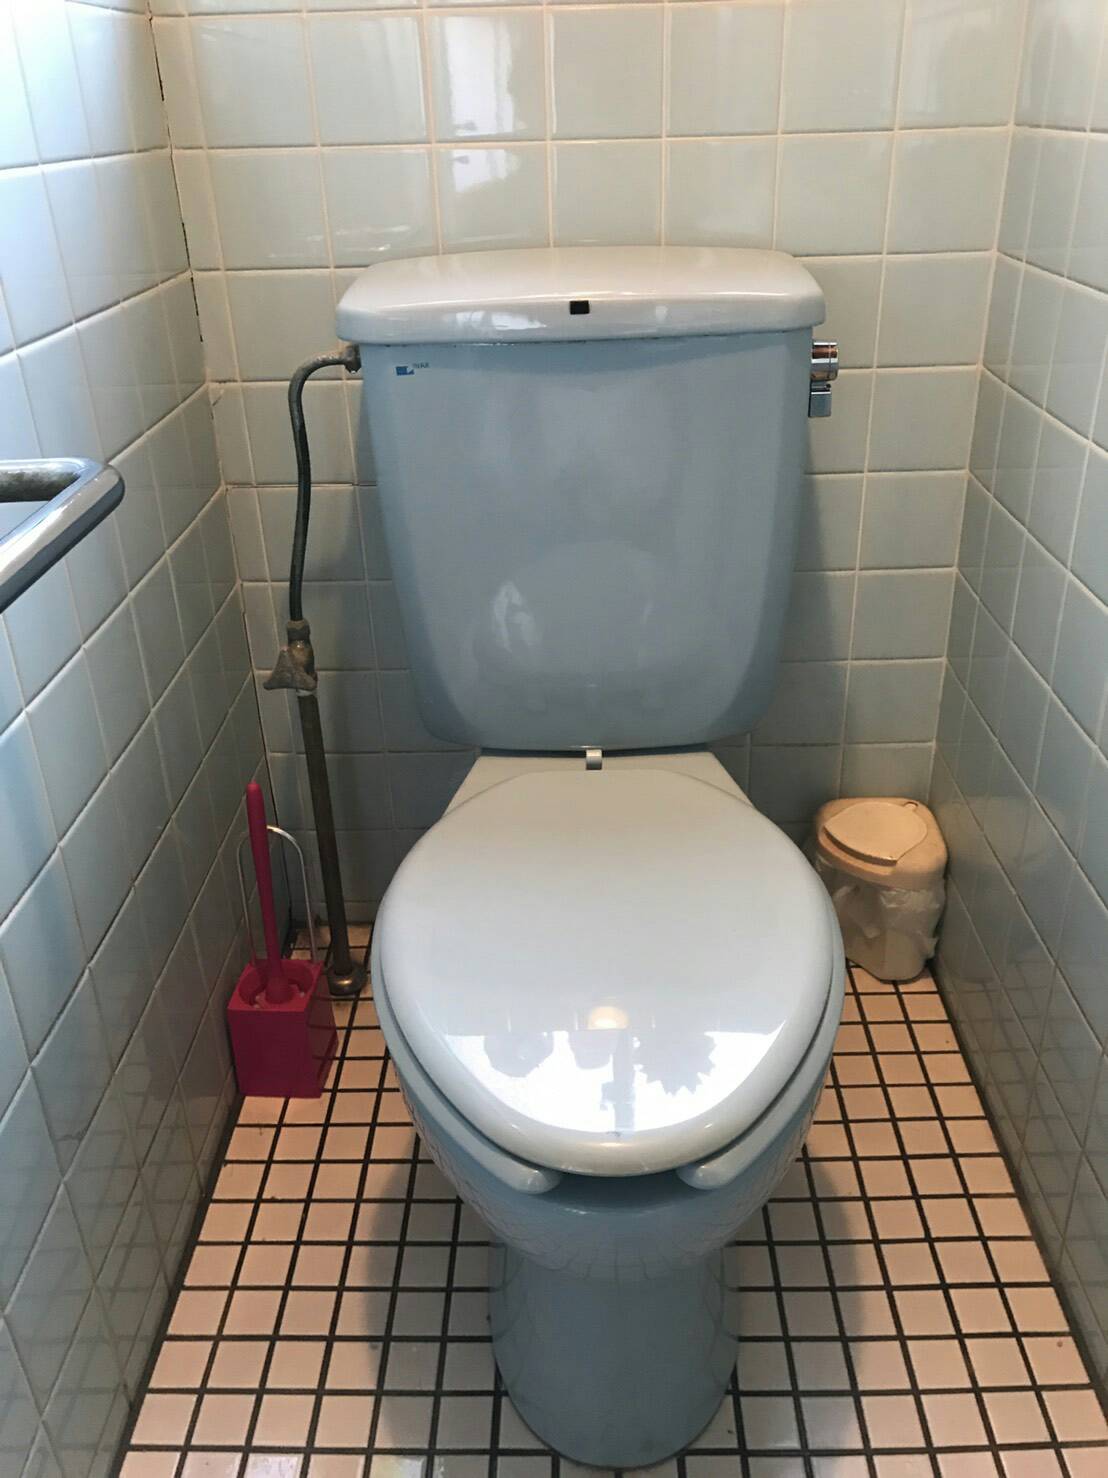 姫路市のお客様からトイレ水漏れ修理のご依頼を頂きました。